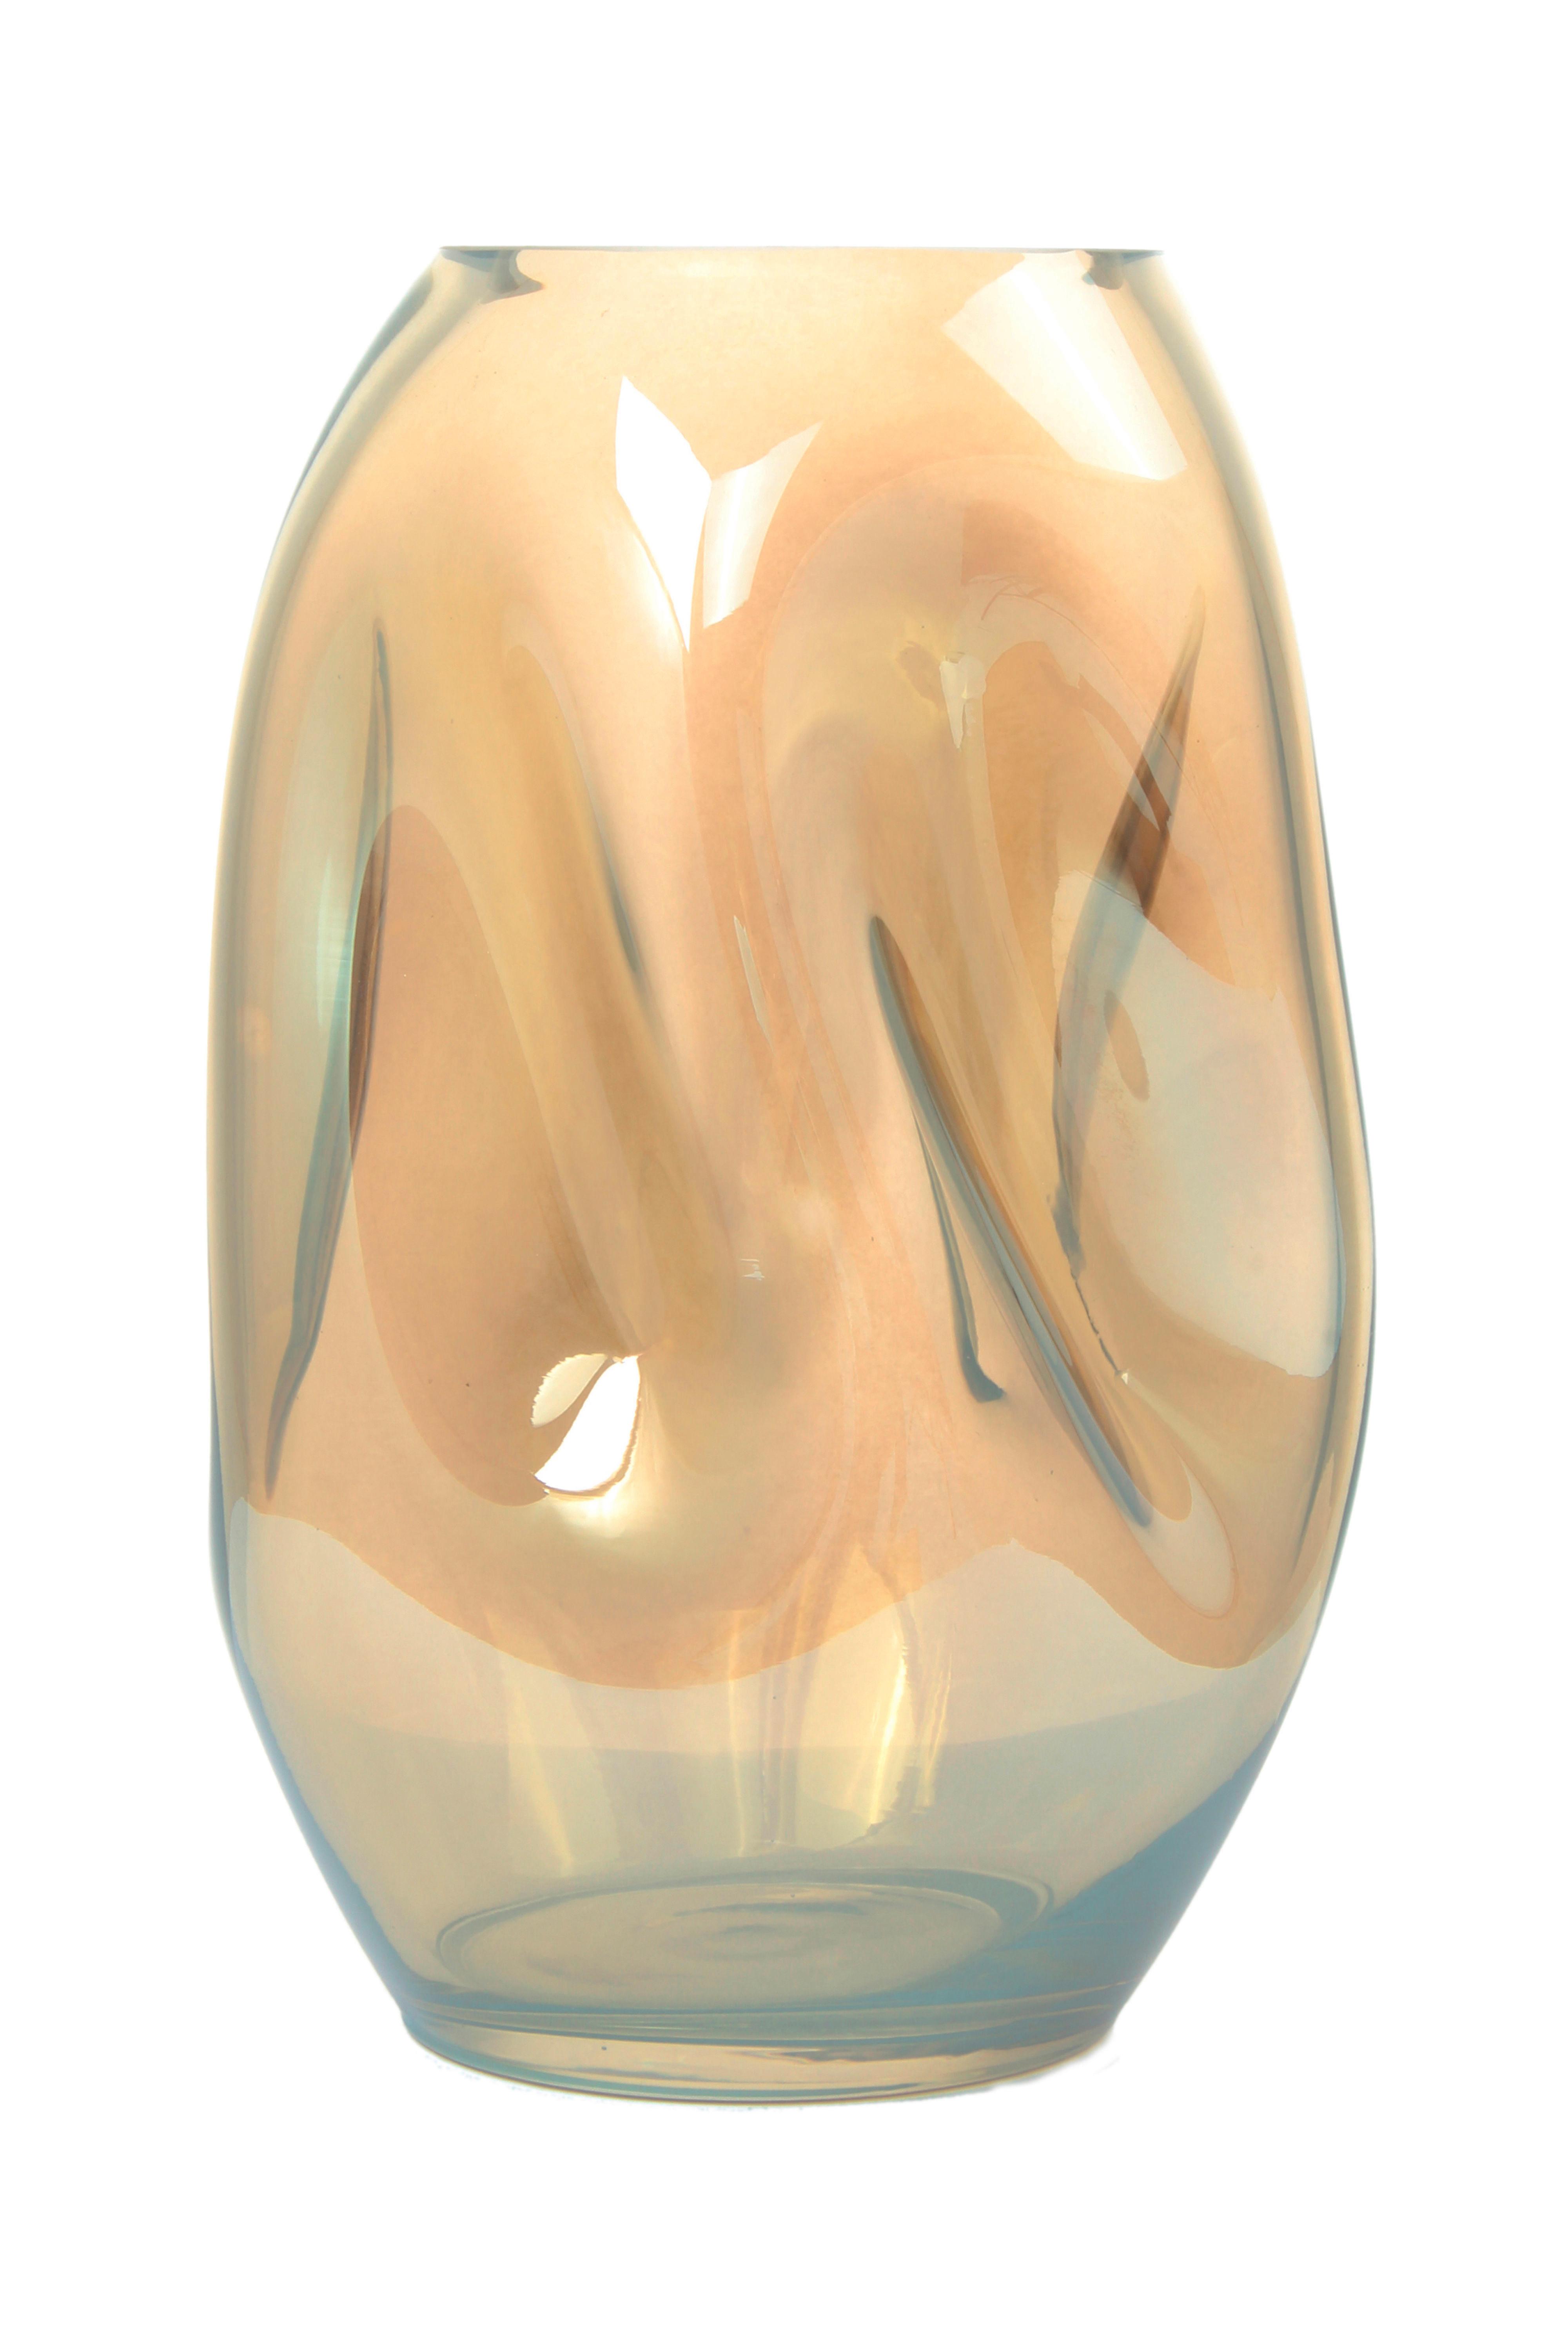 Vase Sidney Zylindrisch Glas Bernsteinfarben H: 25 cm - Bernsteinfarben, Design, Glas (15/25/15cm)